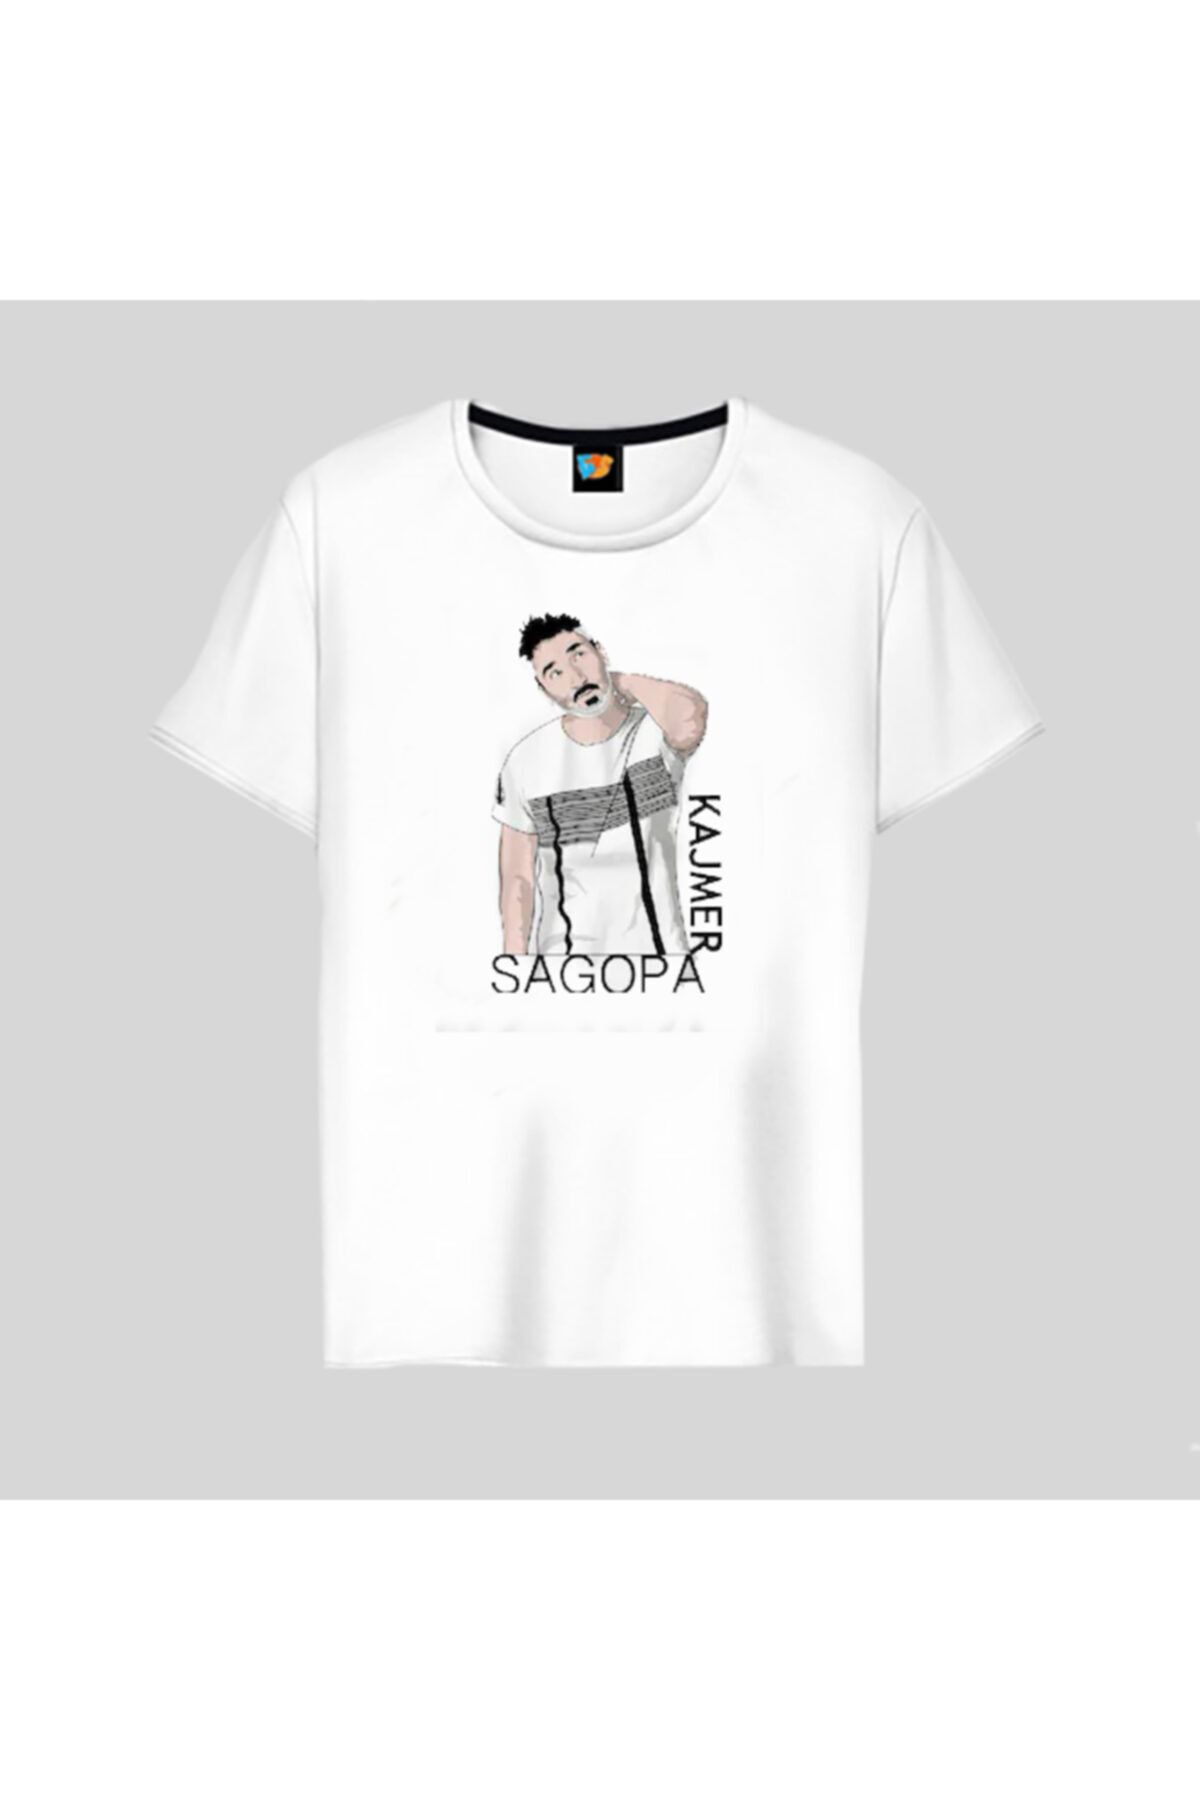 Gala Sagopa Kajmer Beyaz Erkek Tişört T-shirt19